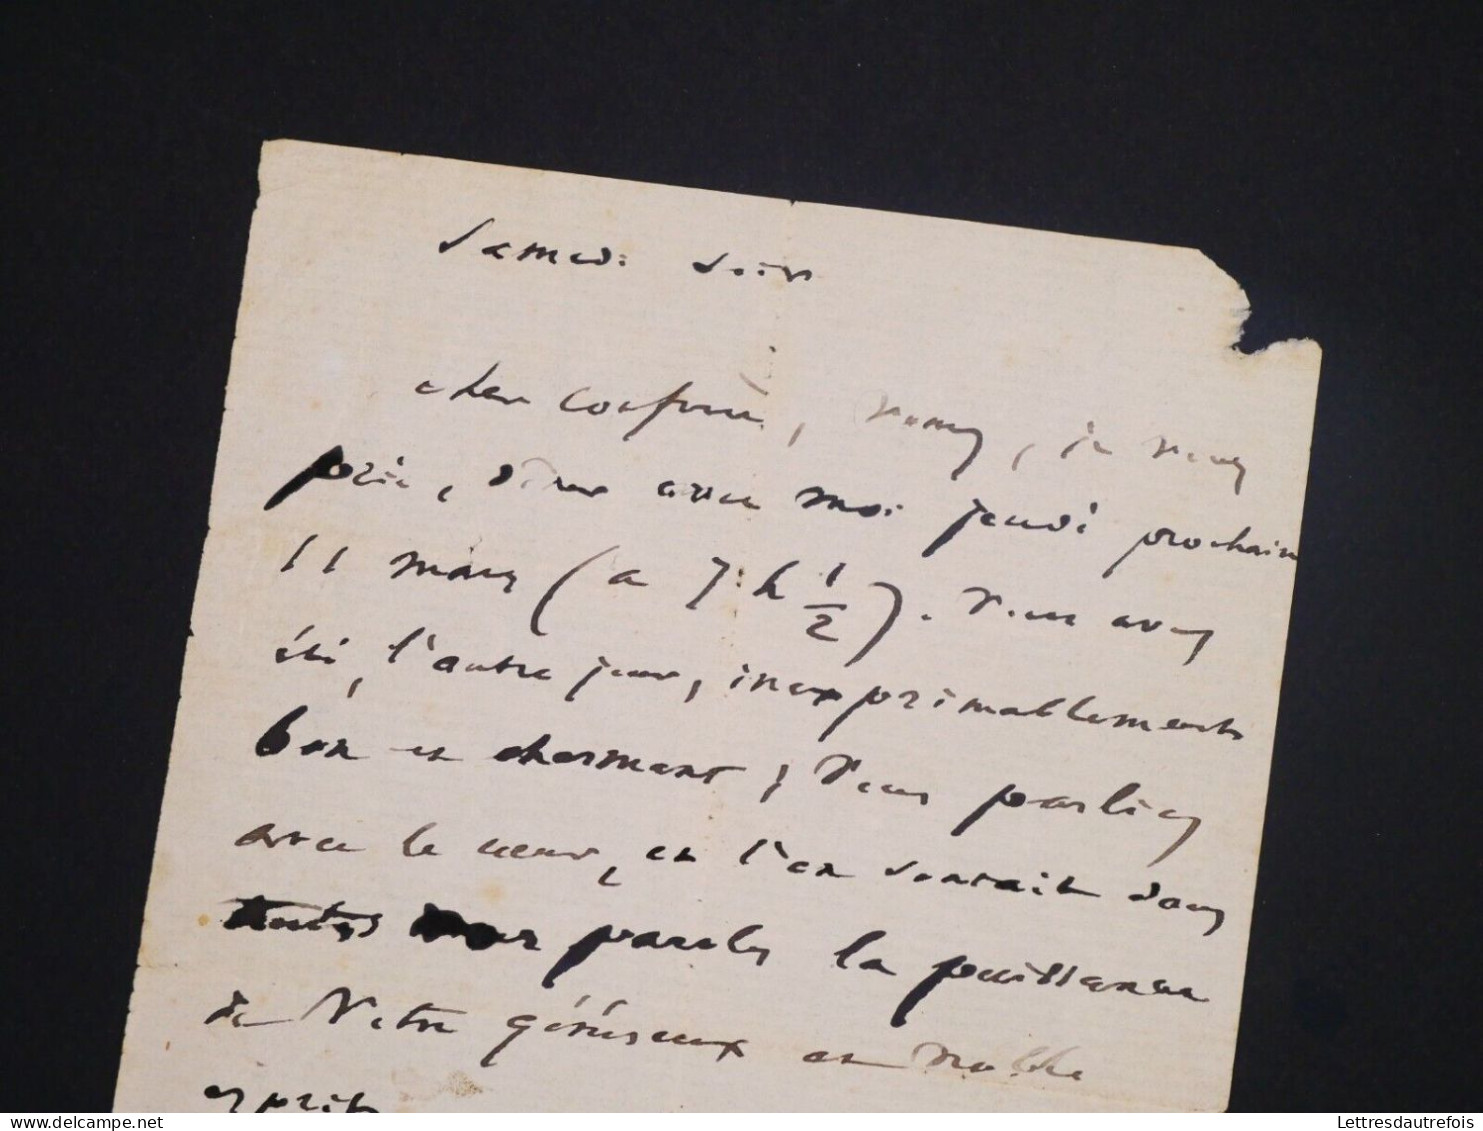 Victor Hugo - Lettre autographe signée - Manuscrit - "Généreux et noble esprit"